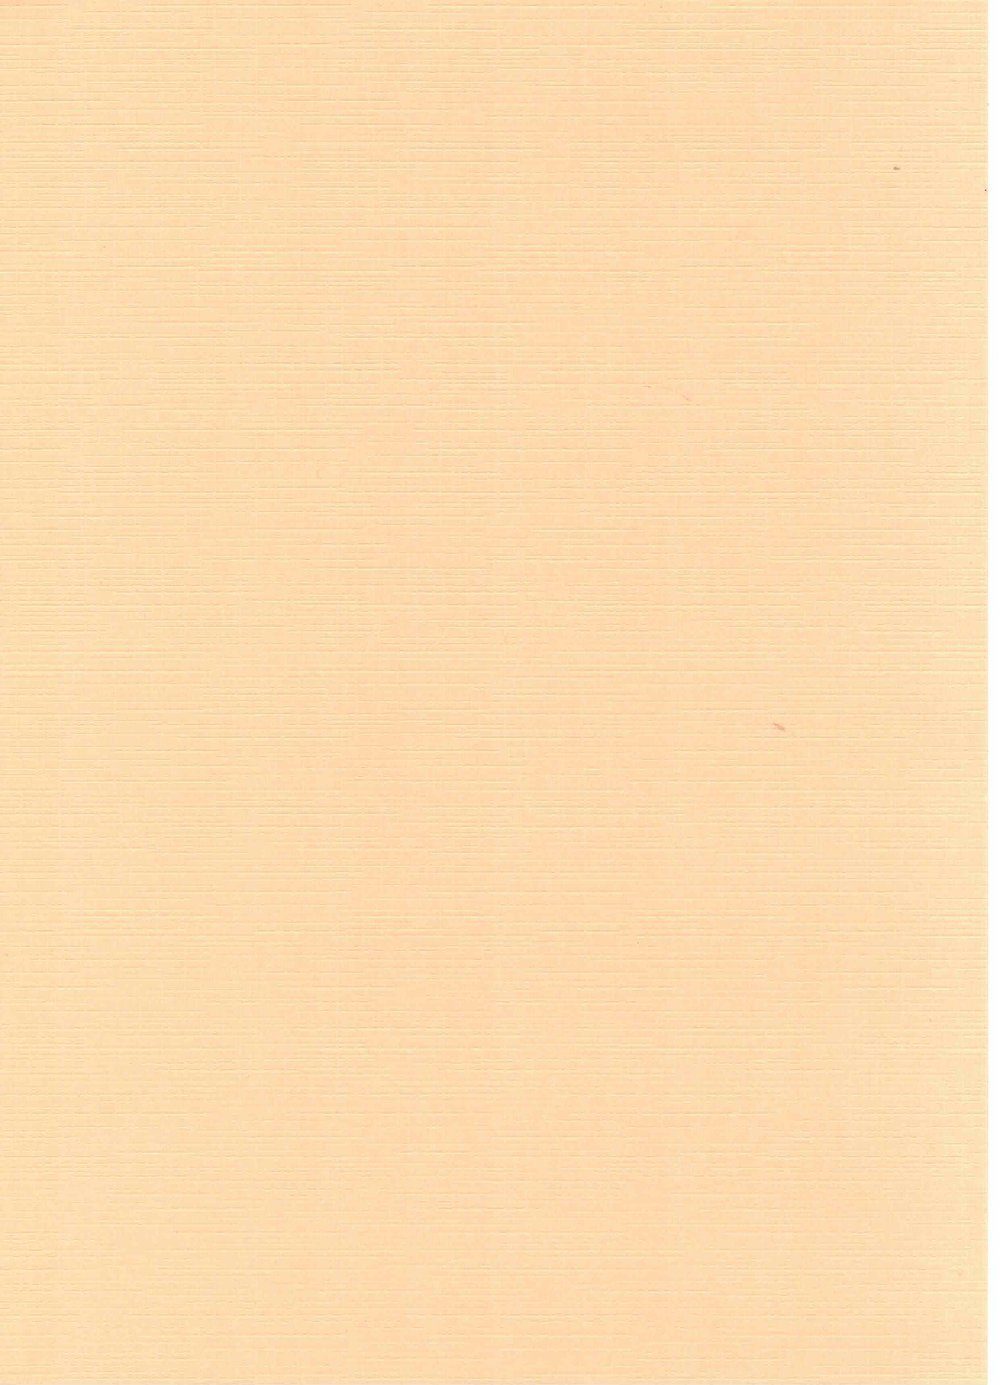 250g/m² apricose Leinen-Karton Zeichenpapier A4 5 Blatt/Pckg. HobbyFun